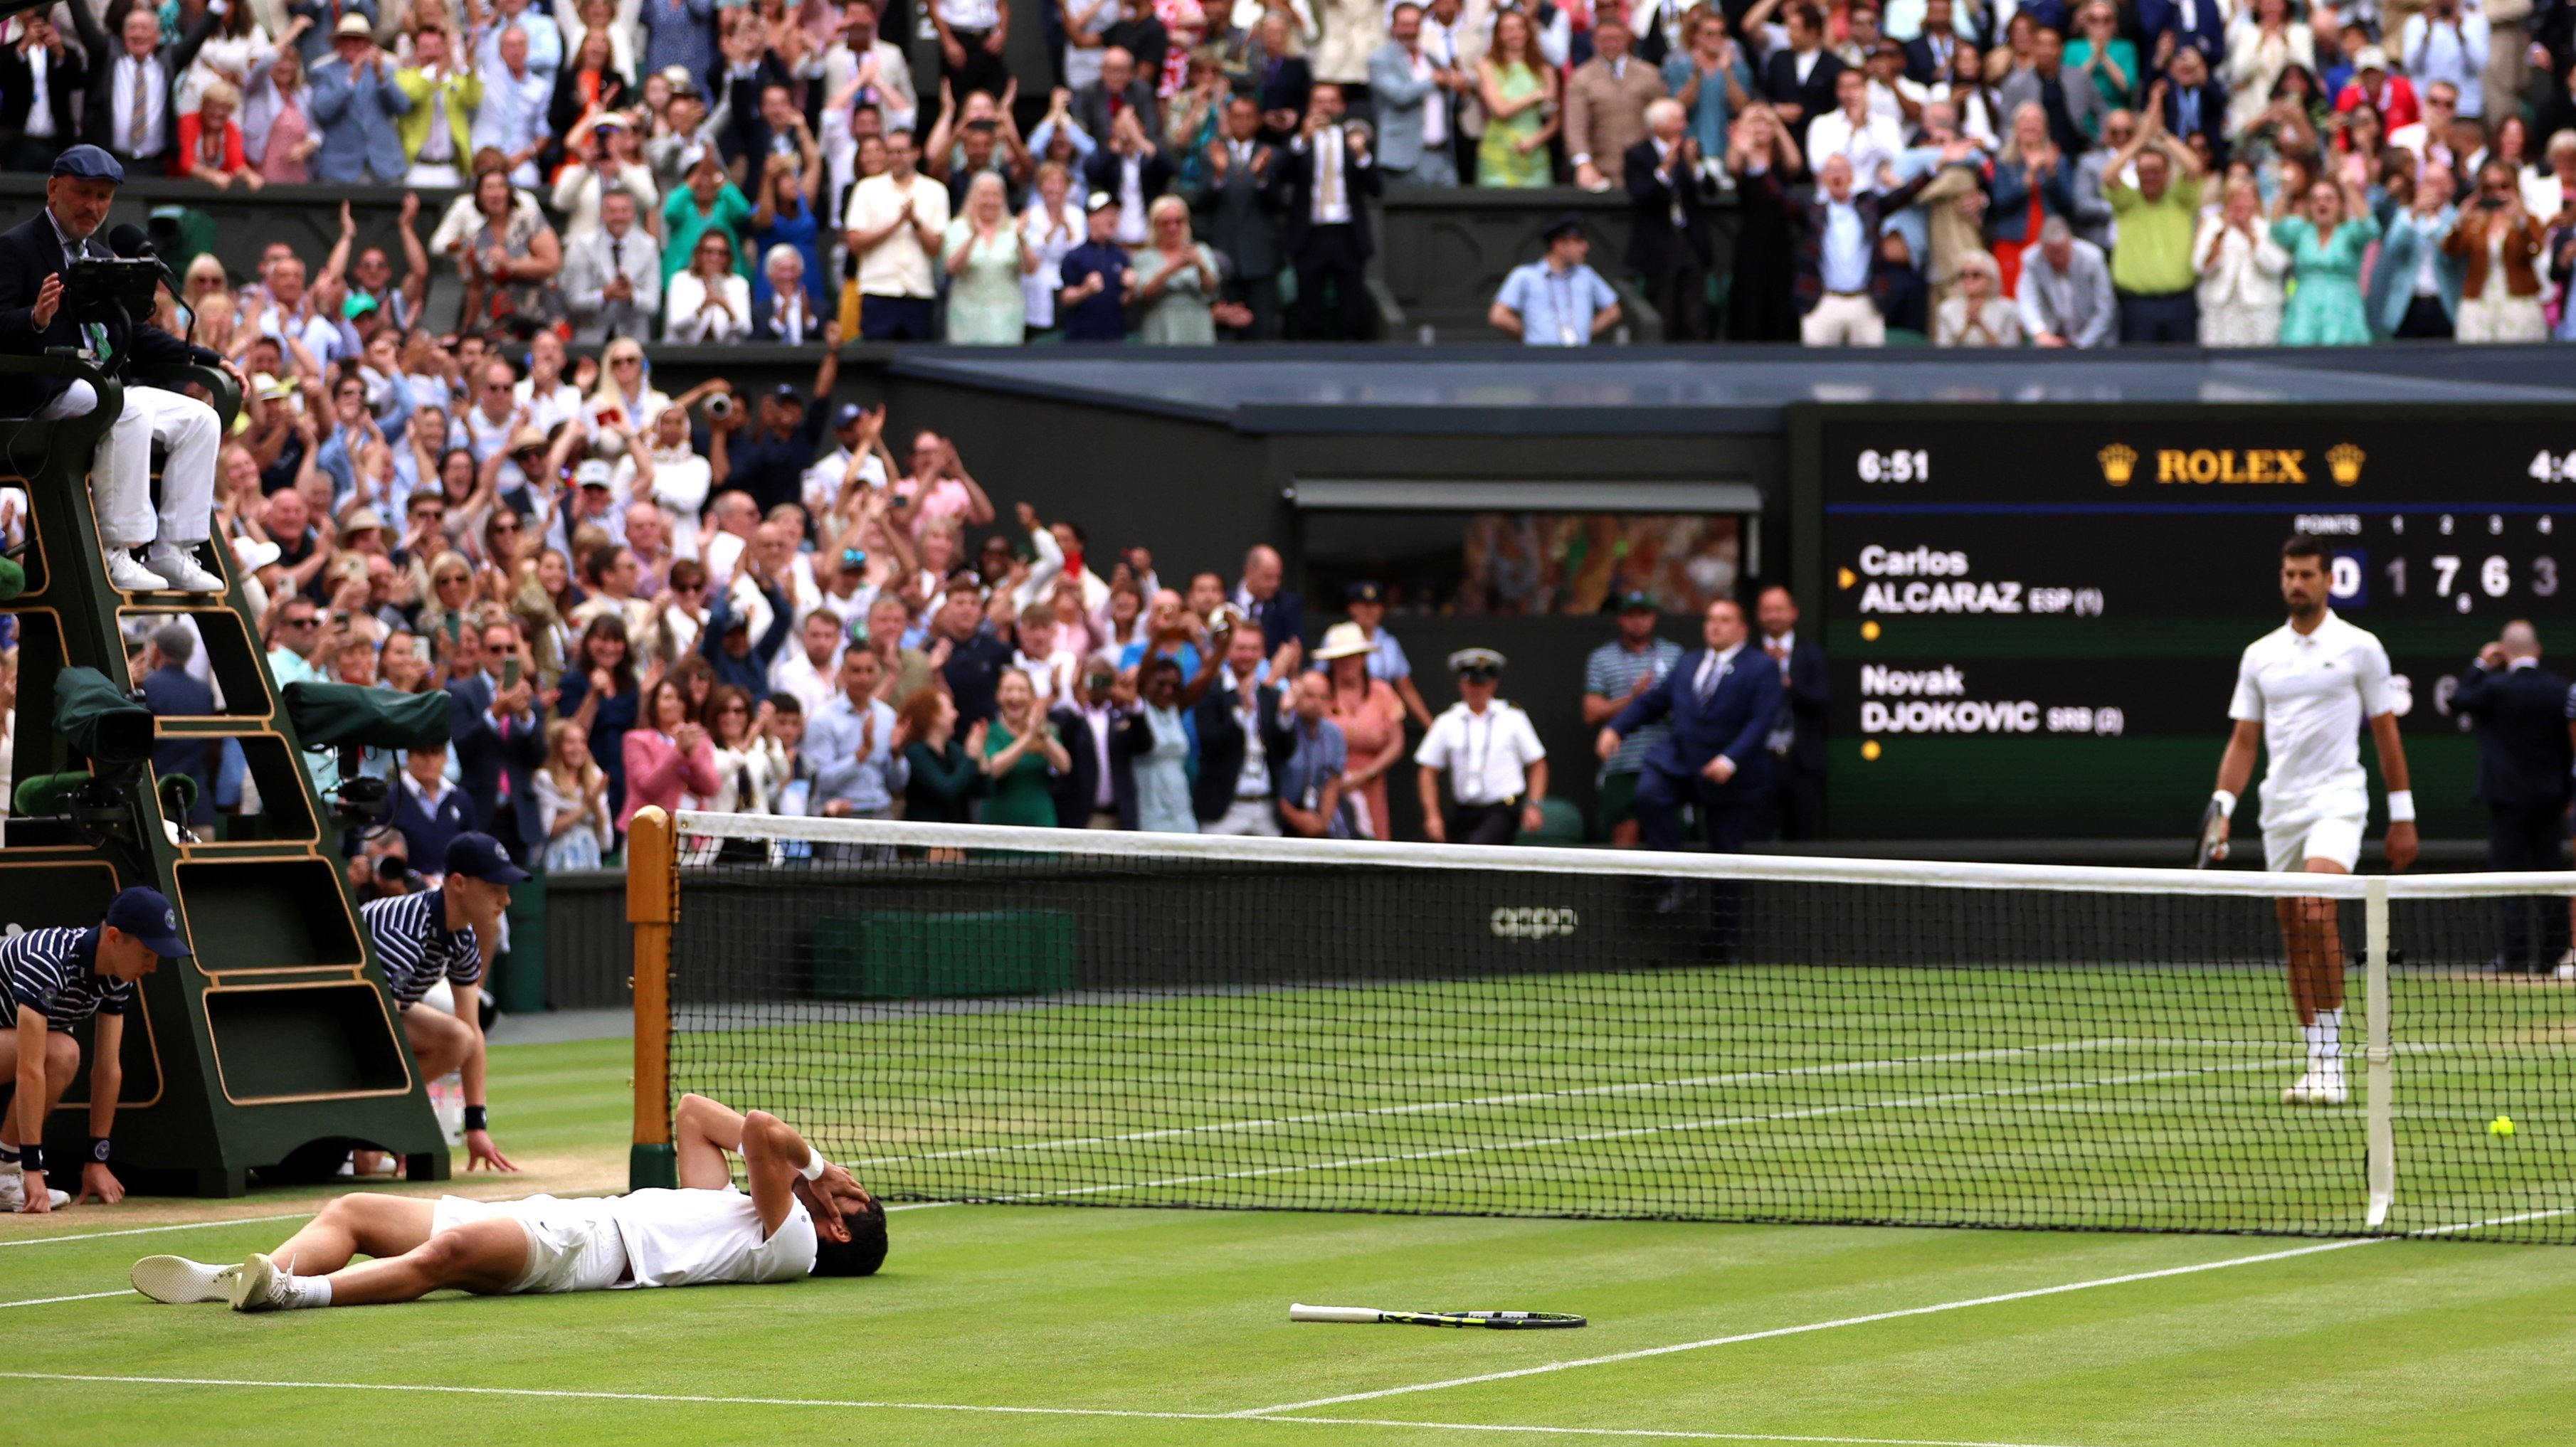 Carlos Alcaraz defeats Novak Djokovic, claims 2023 Wimbledon title